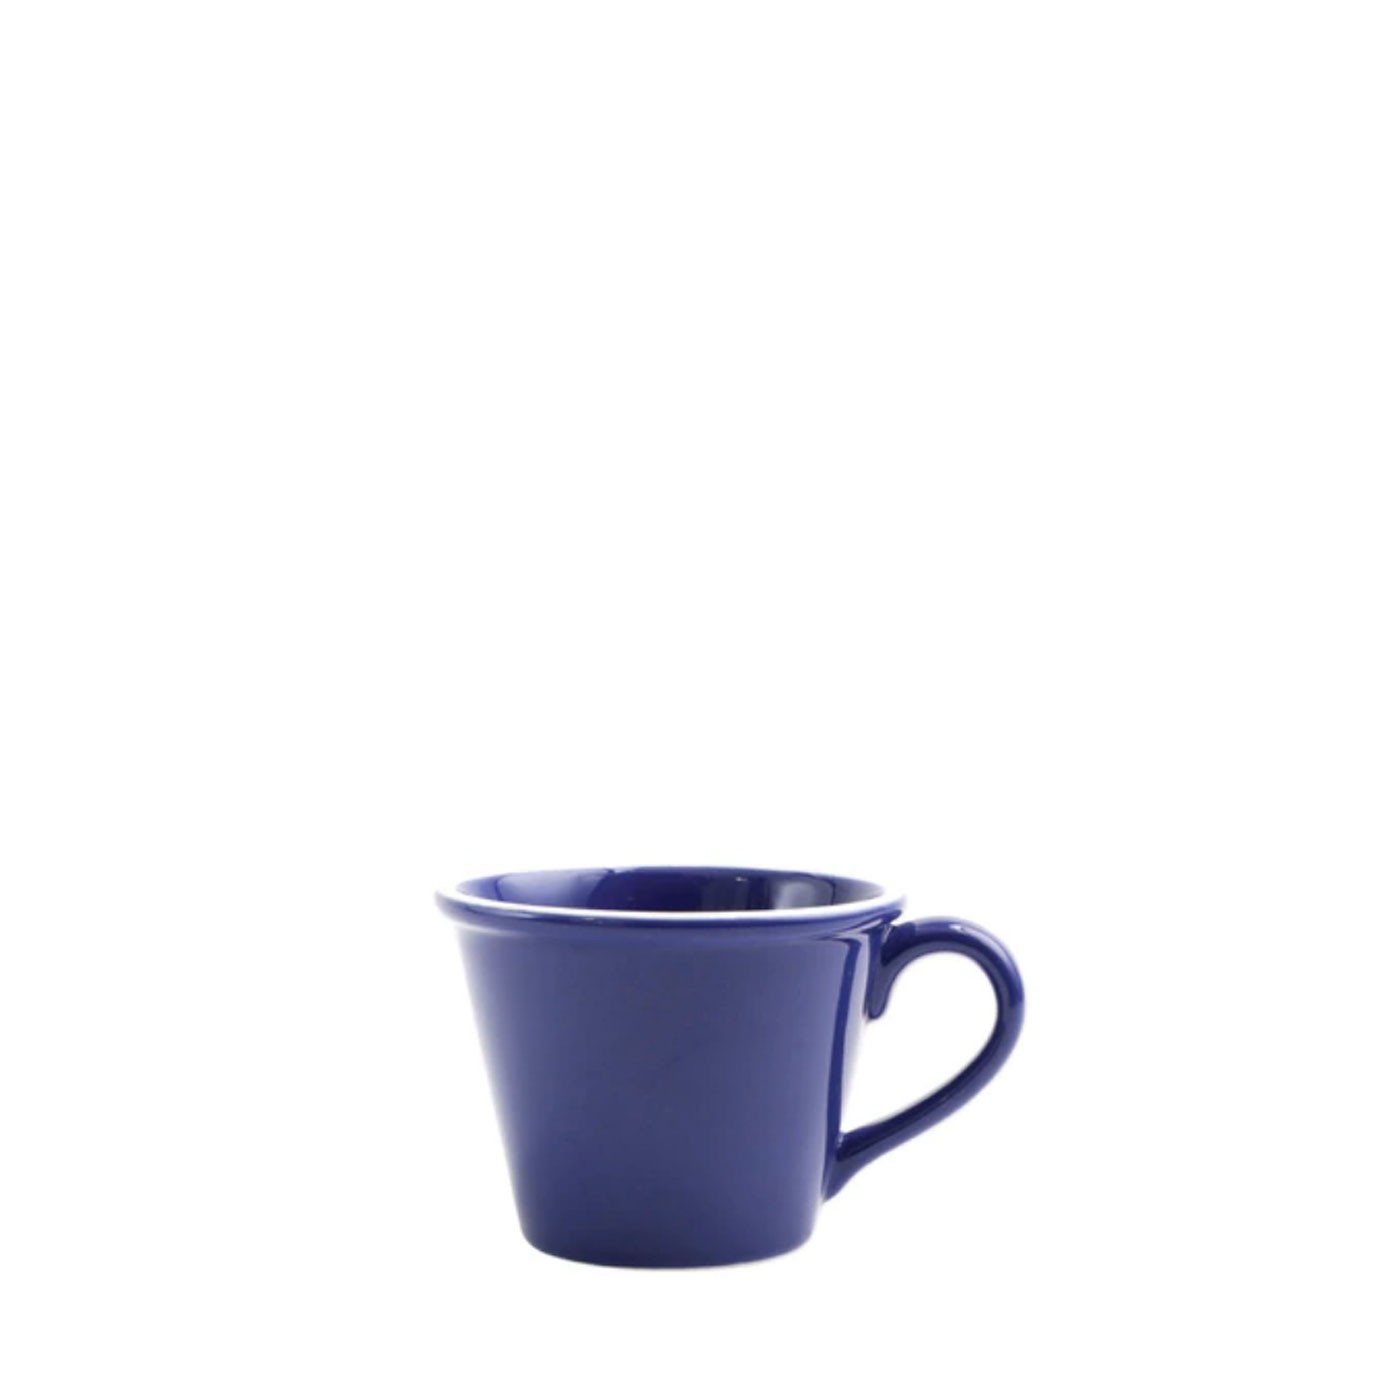 Chroma Blue Mug - Vietri | Eataly.com